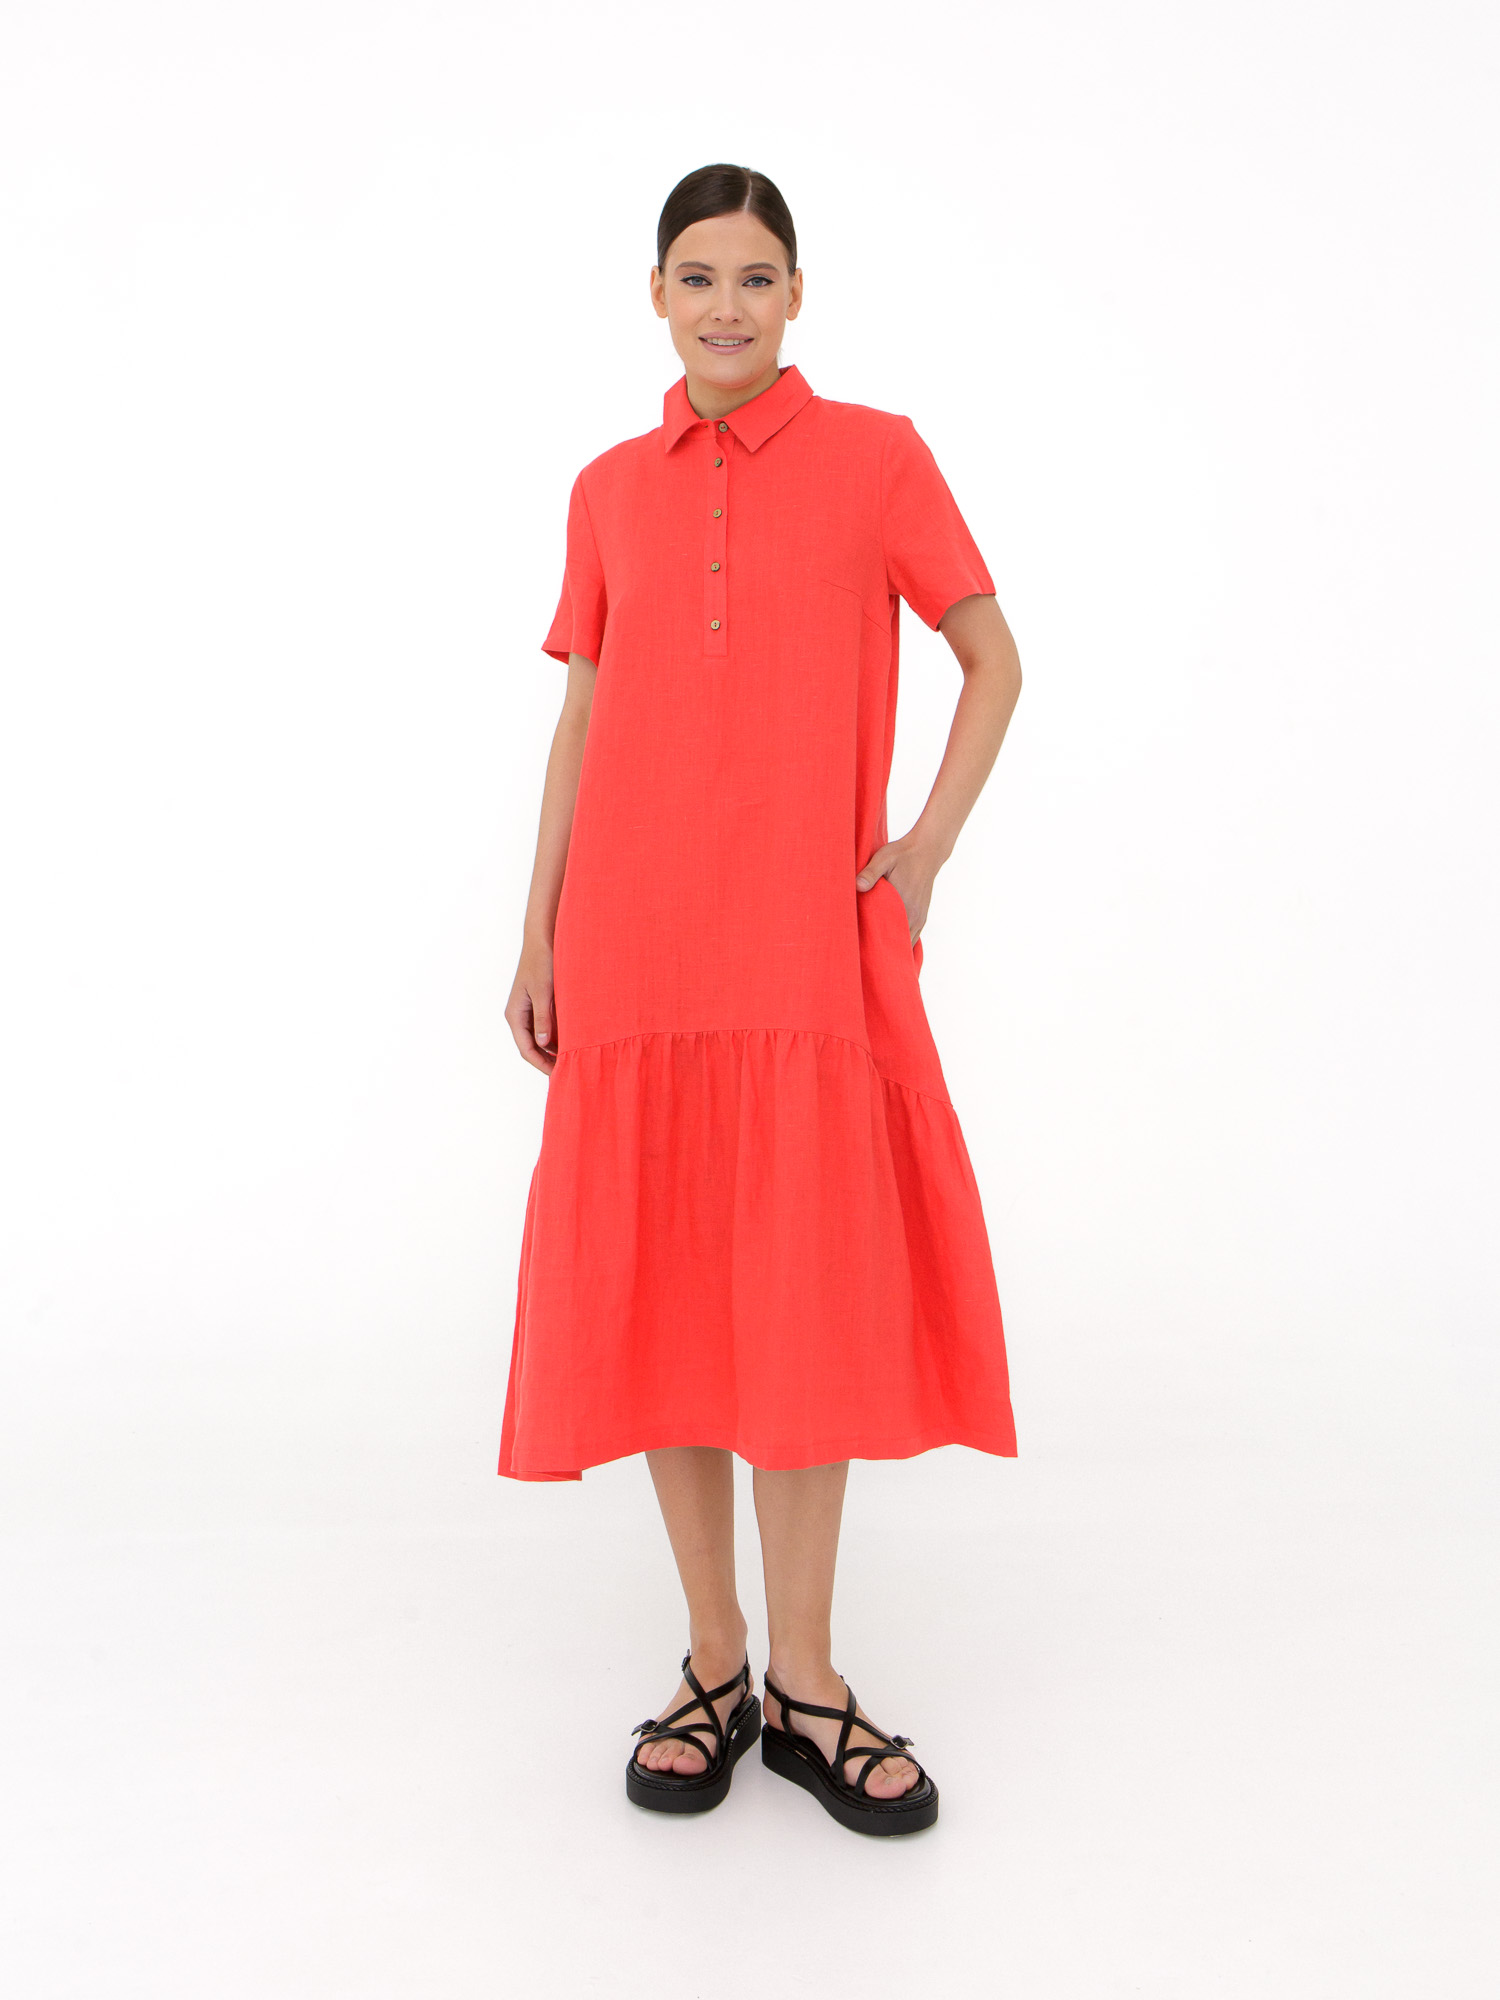 Платье женское КЛ-7521А-ИЛ23 коралловое 42 ELECTRA STYLE, цвет коралловый, размер 42 - фото 1